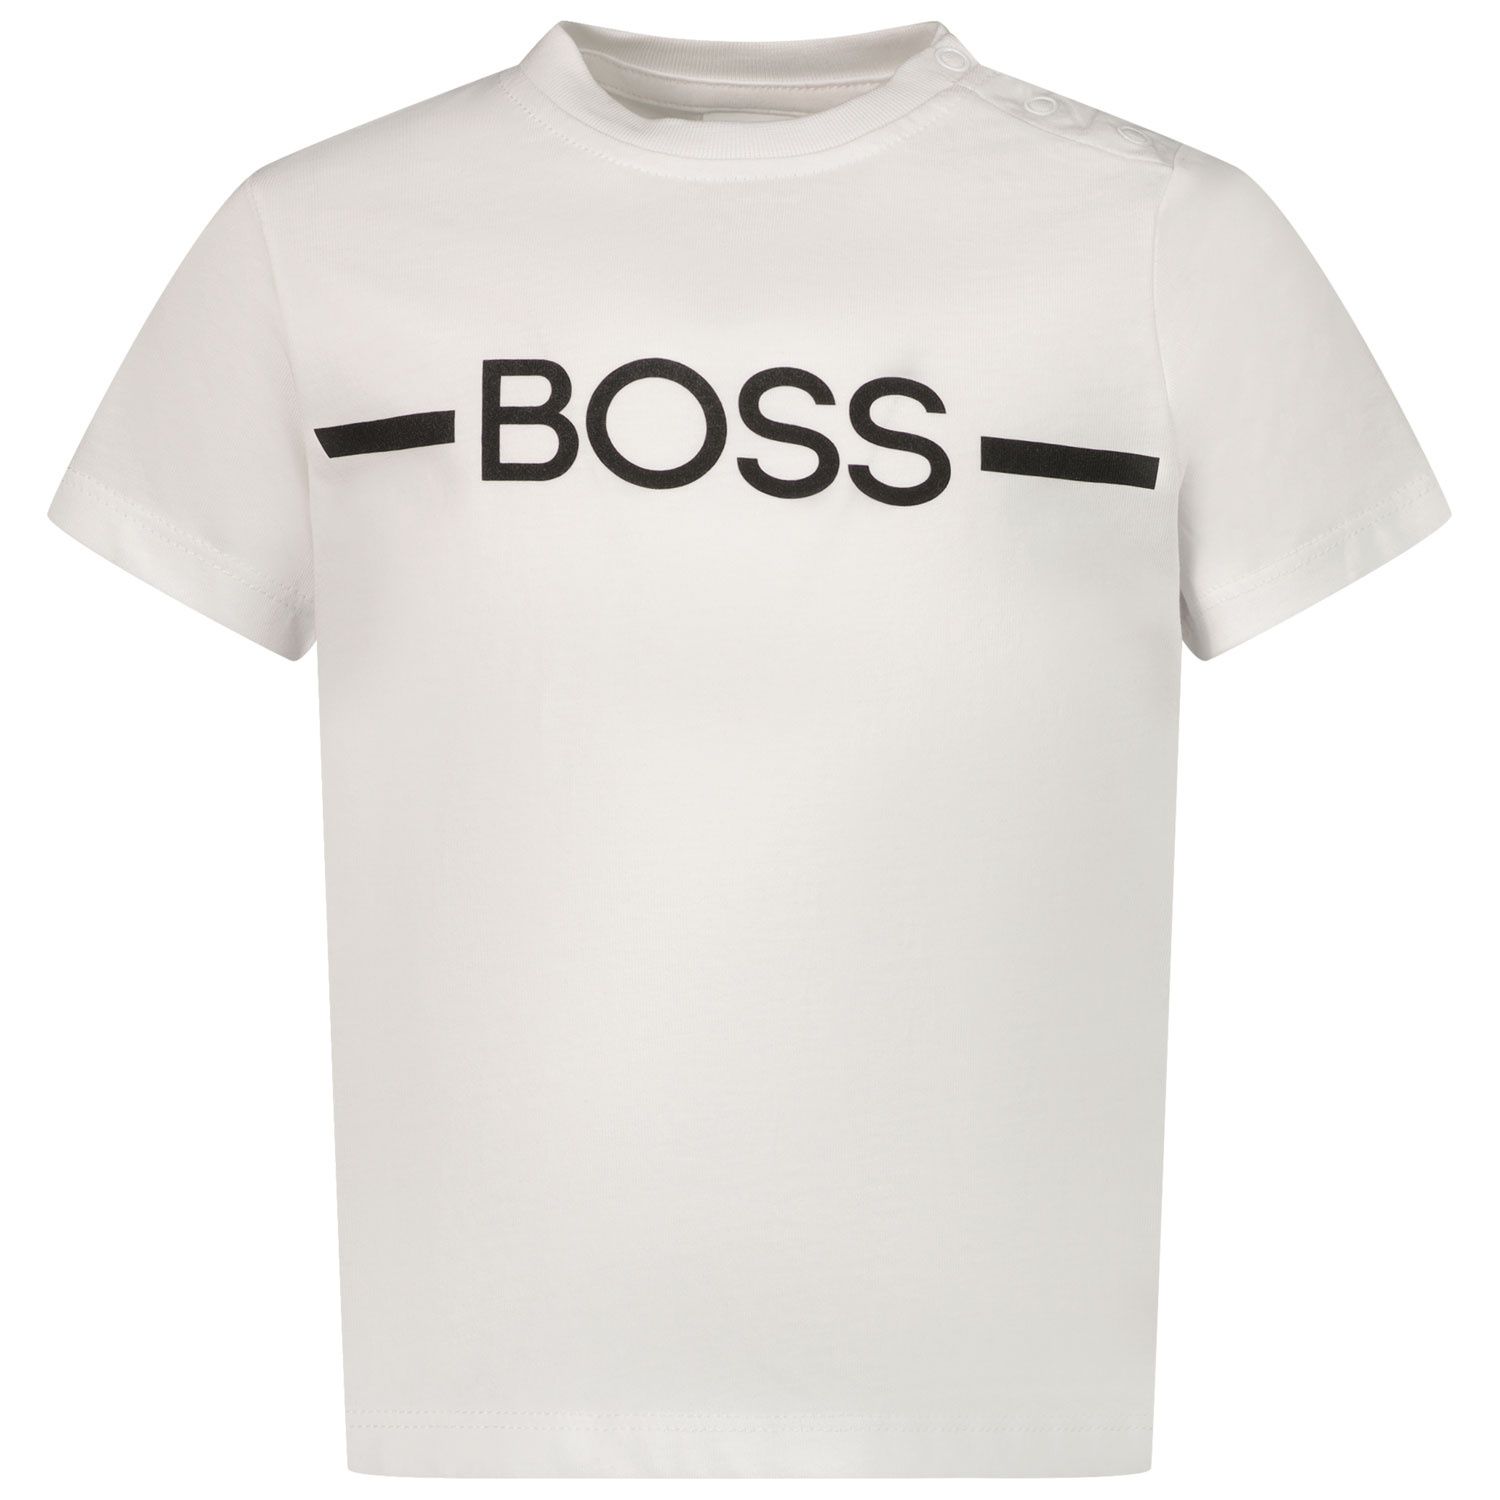 Afbeelding van Boss J05908 baby t-shirt wit